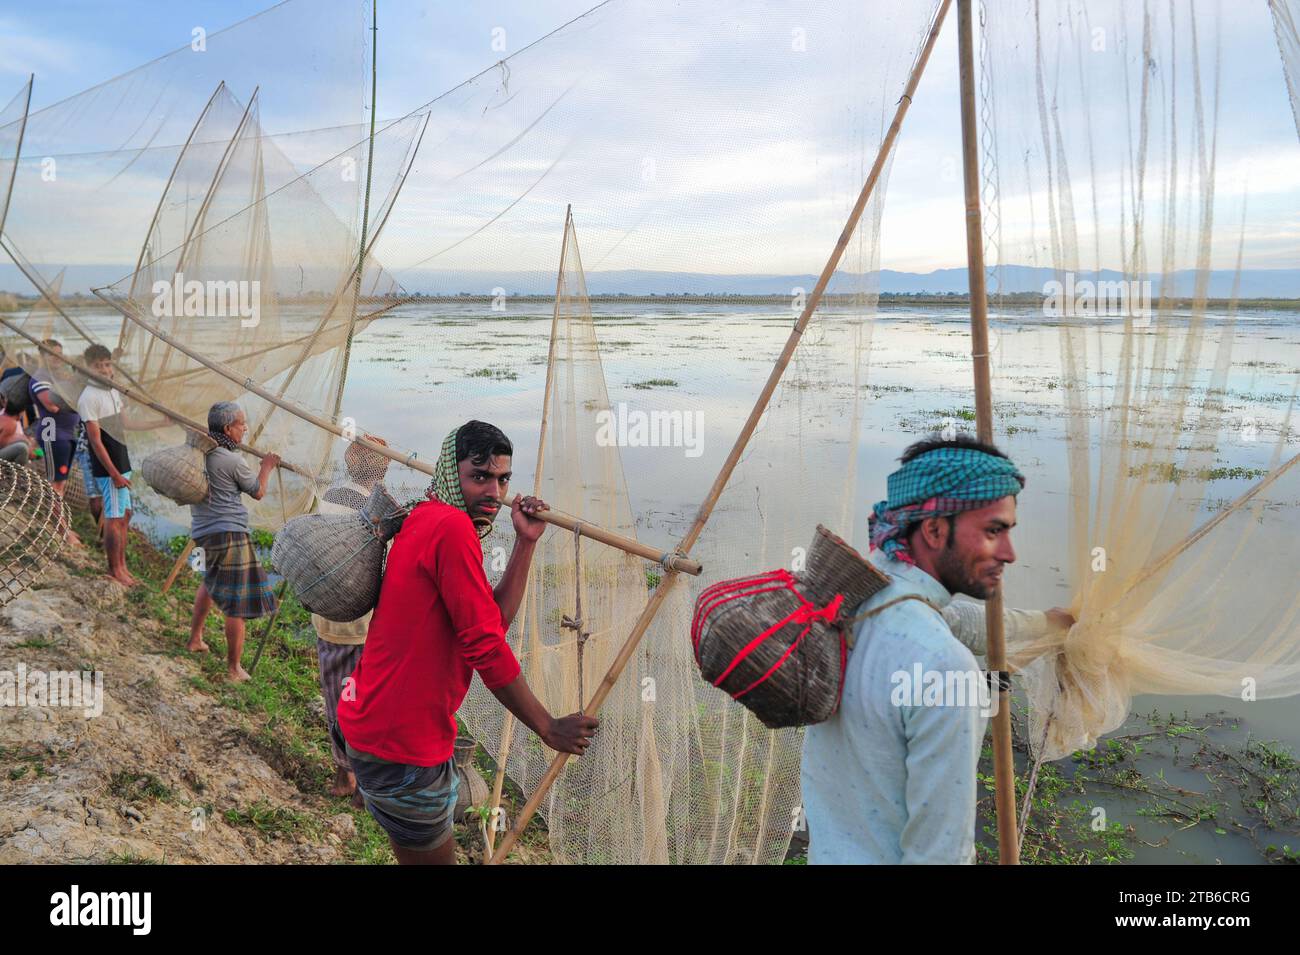 Le popolazioni rurali armate di trappole e reti per pesci di bambù partecipano a un festival invernale di pesca di 200 anni presso la jofra beel of gasbari union di Kanaighat upazila di Sylhet, Bangladesh. Foto Stock